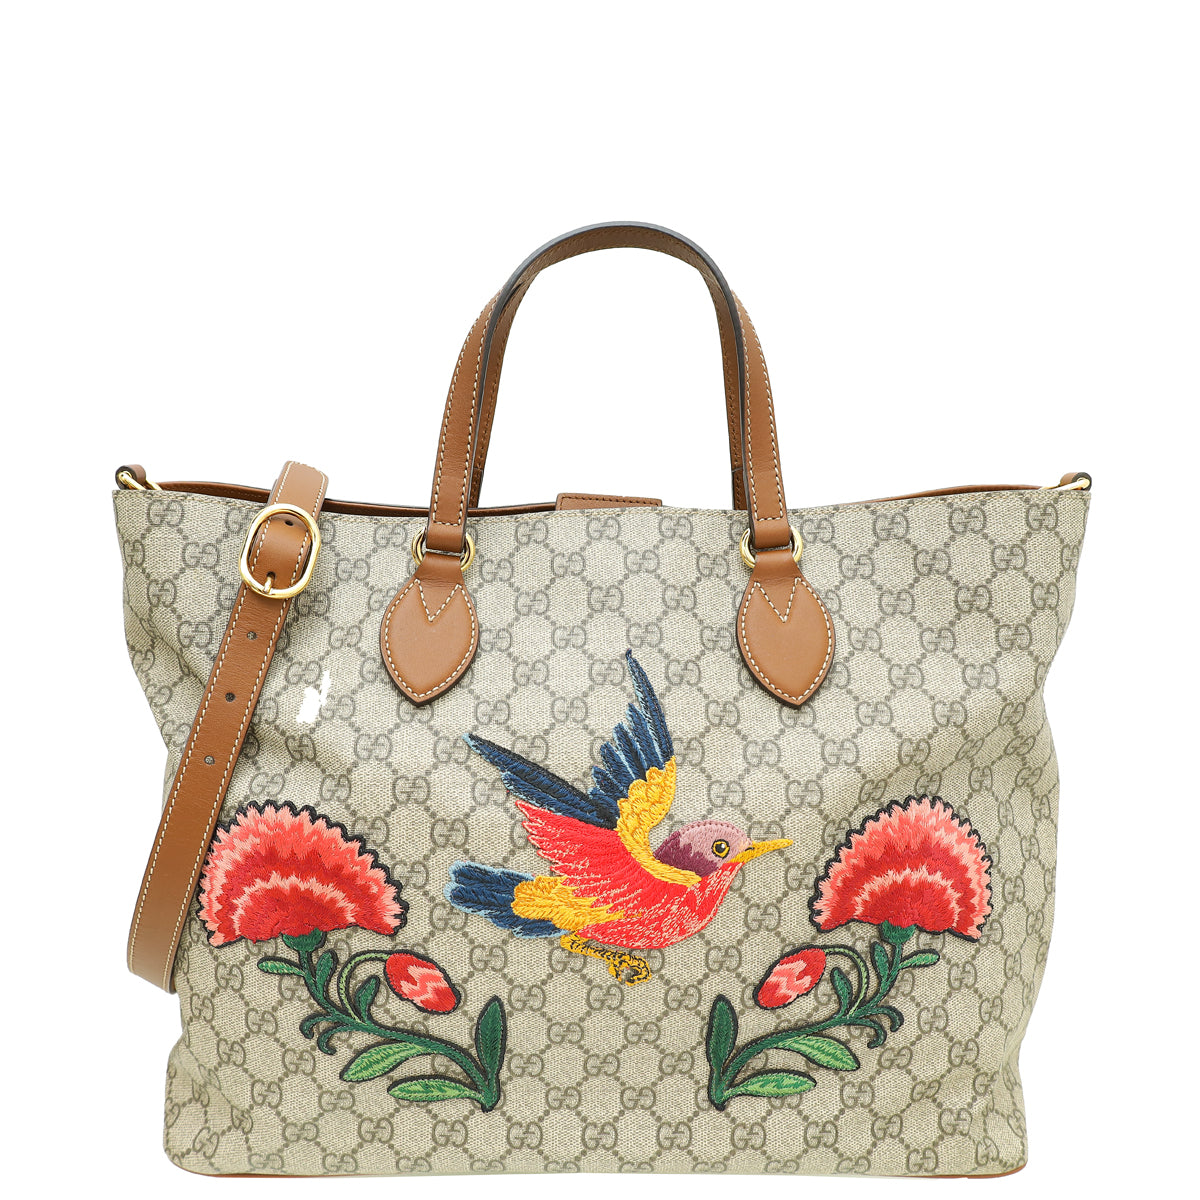 Gucci Bicolor Soft GG Supreme Floral/Bird Embroidered Ltd. Ed. Tote Bag